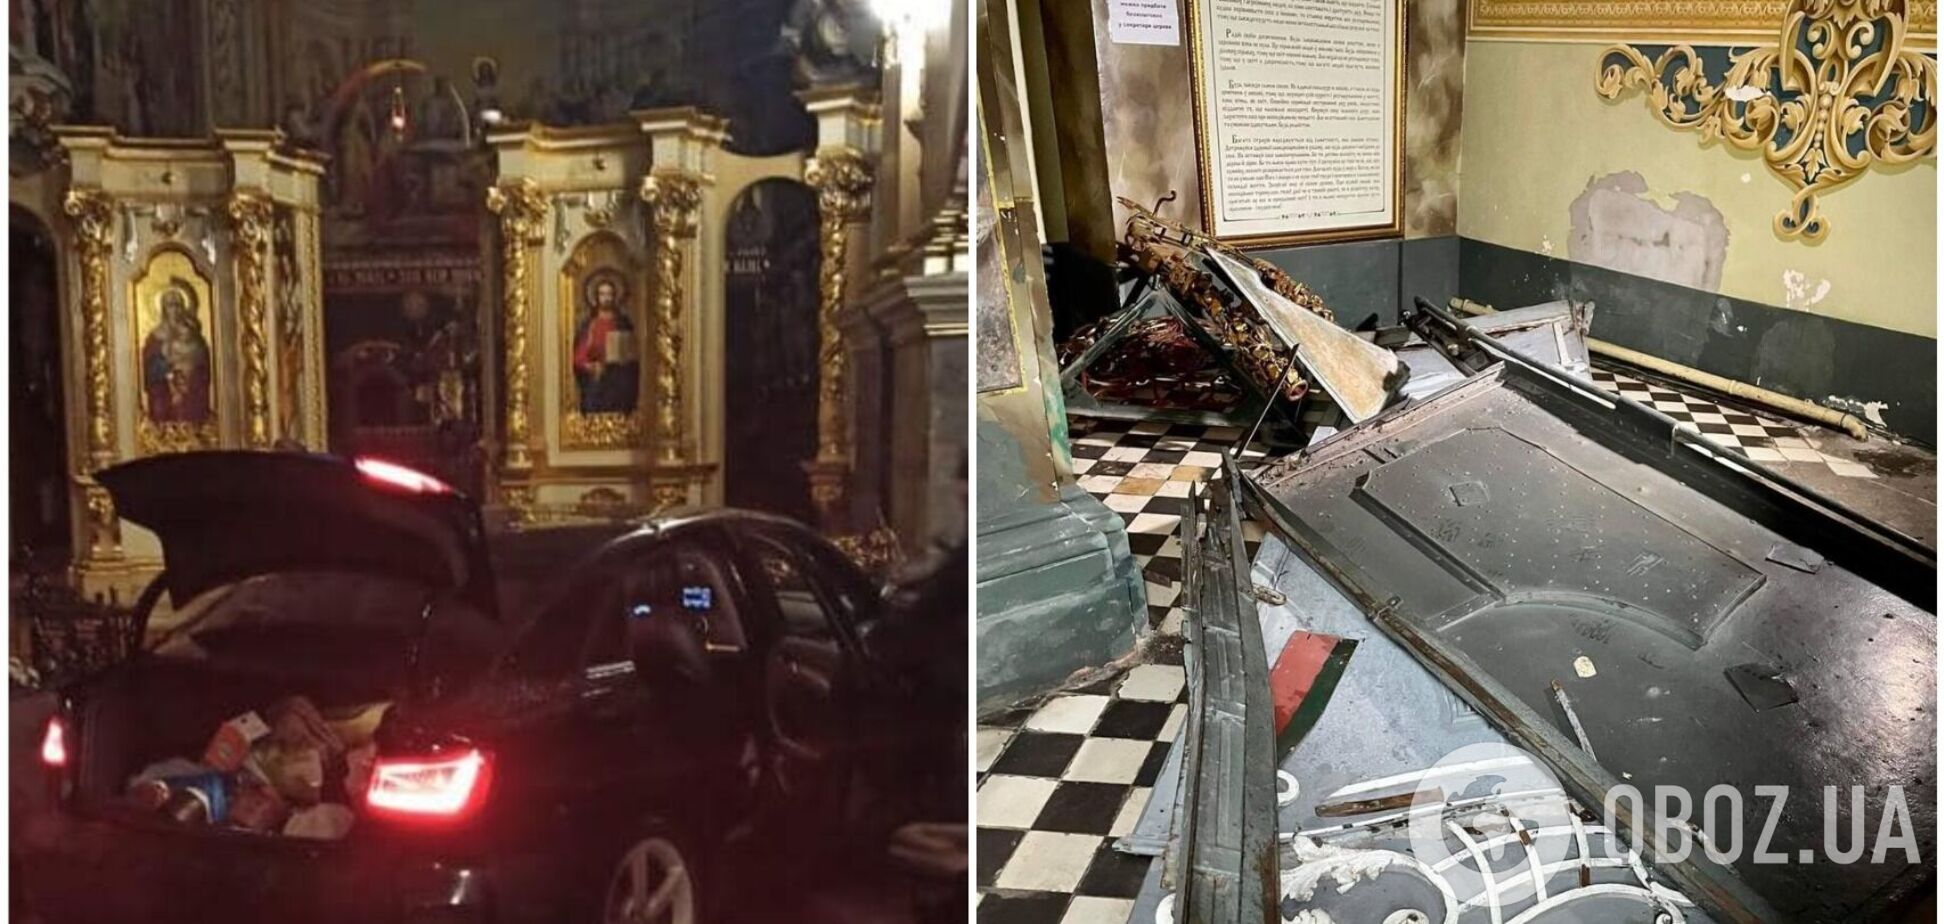 В Тернополе женщина на авто протаранила Архикатедральный собор, уничтожив плащаницу. Фото и видео